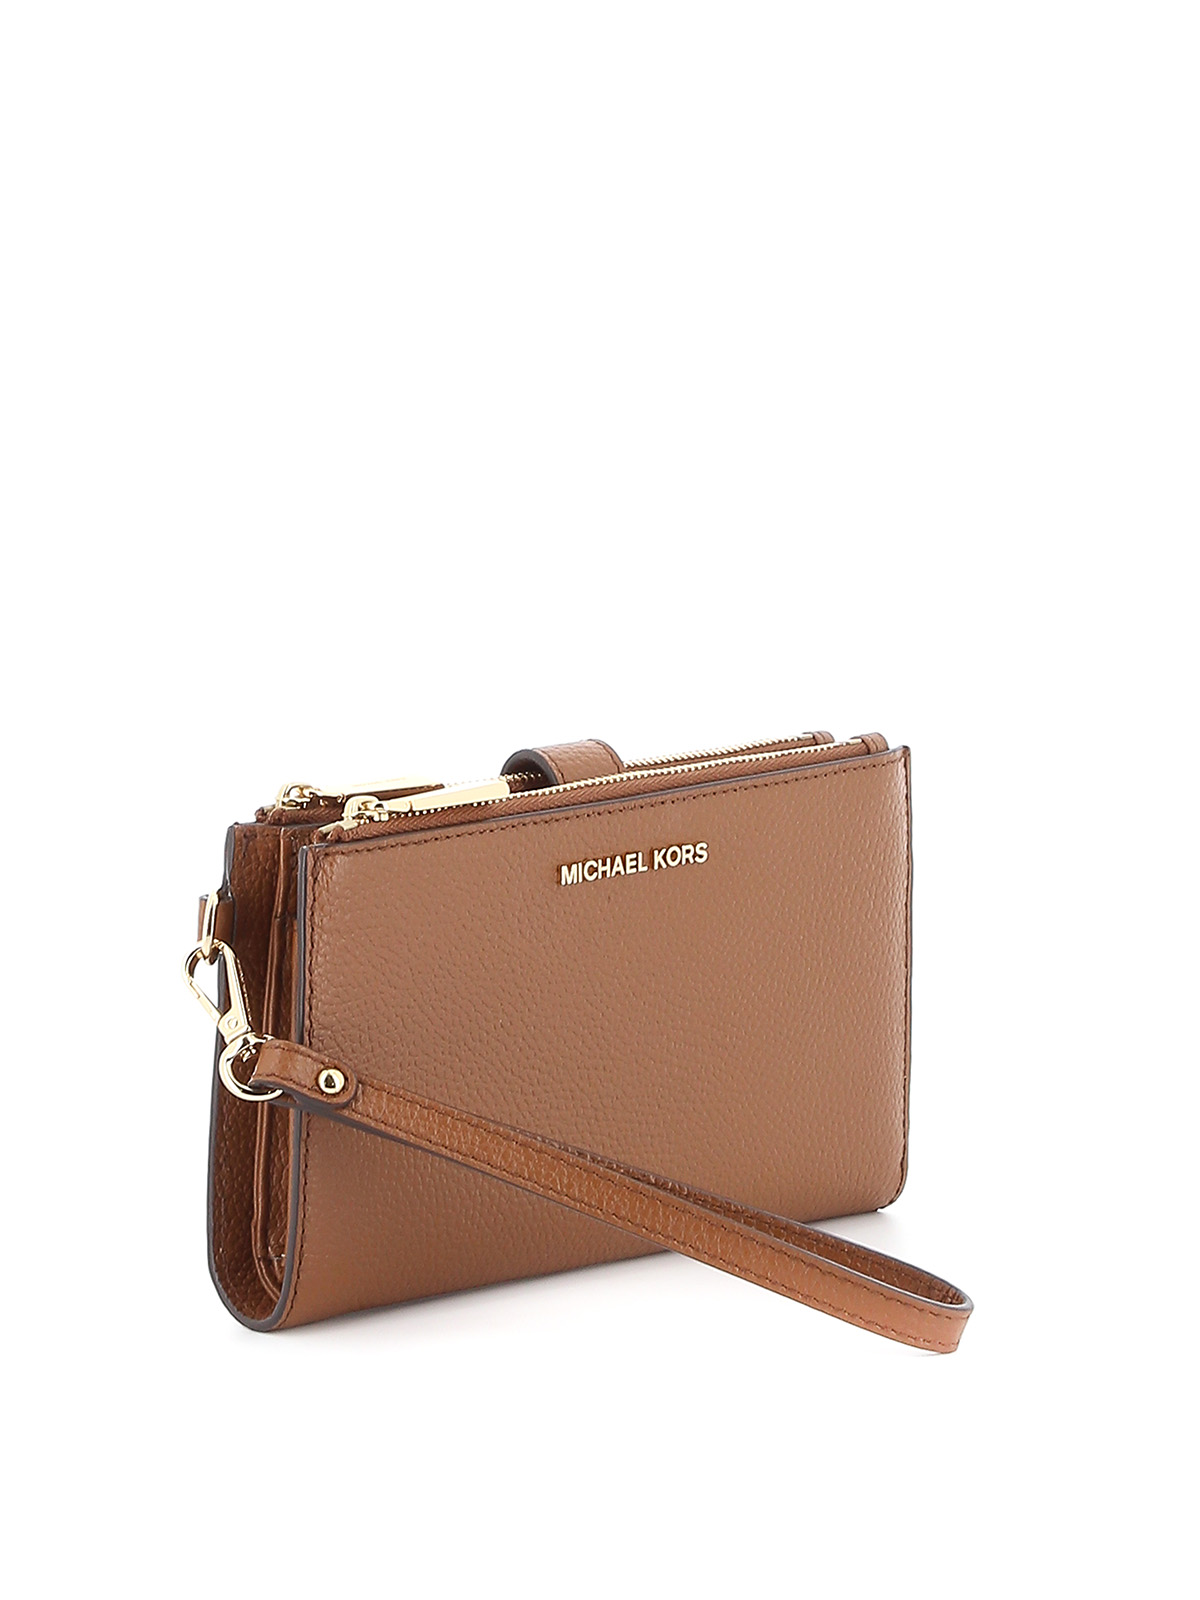 Wallets & purses Michael Kors - Jet Set leather double zip wallet